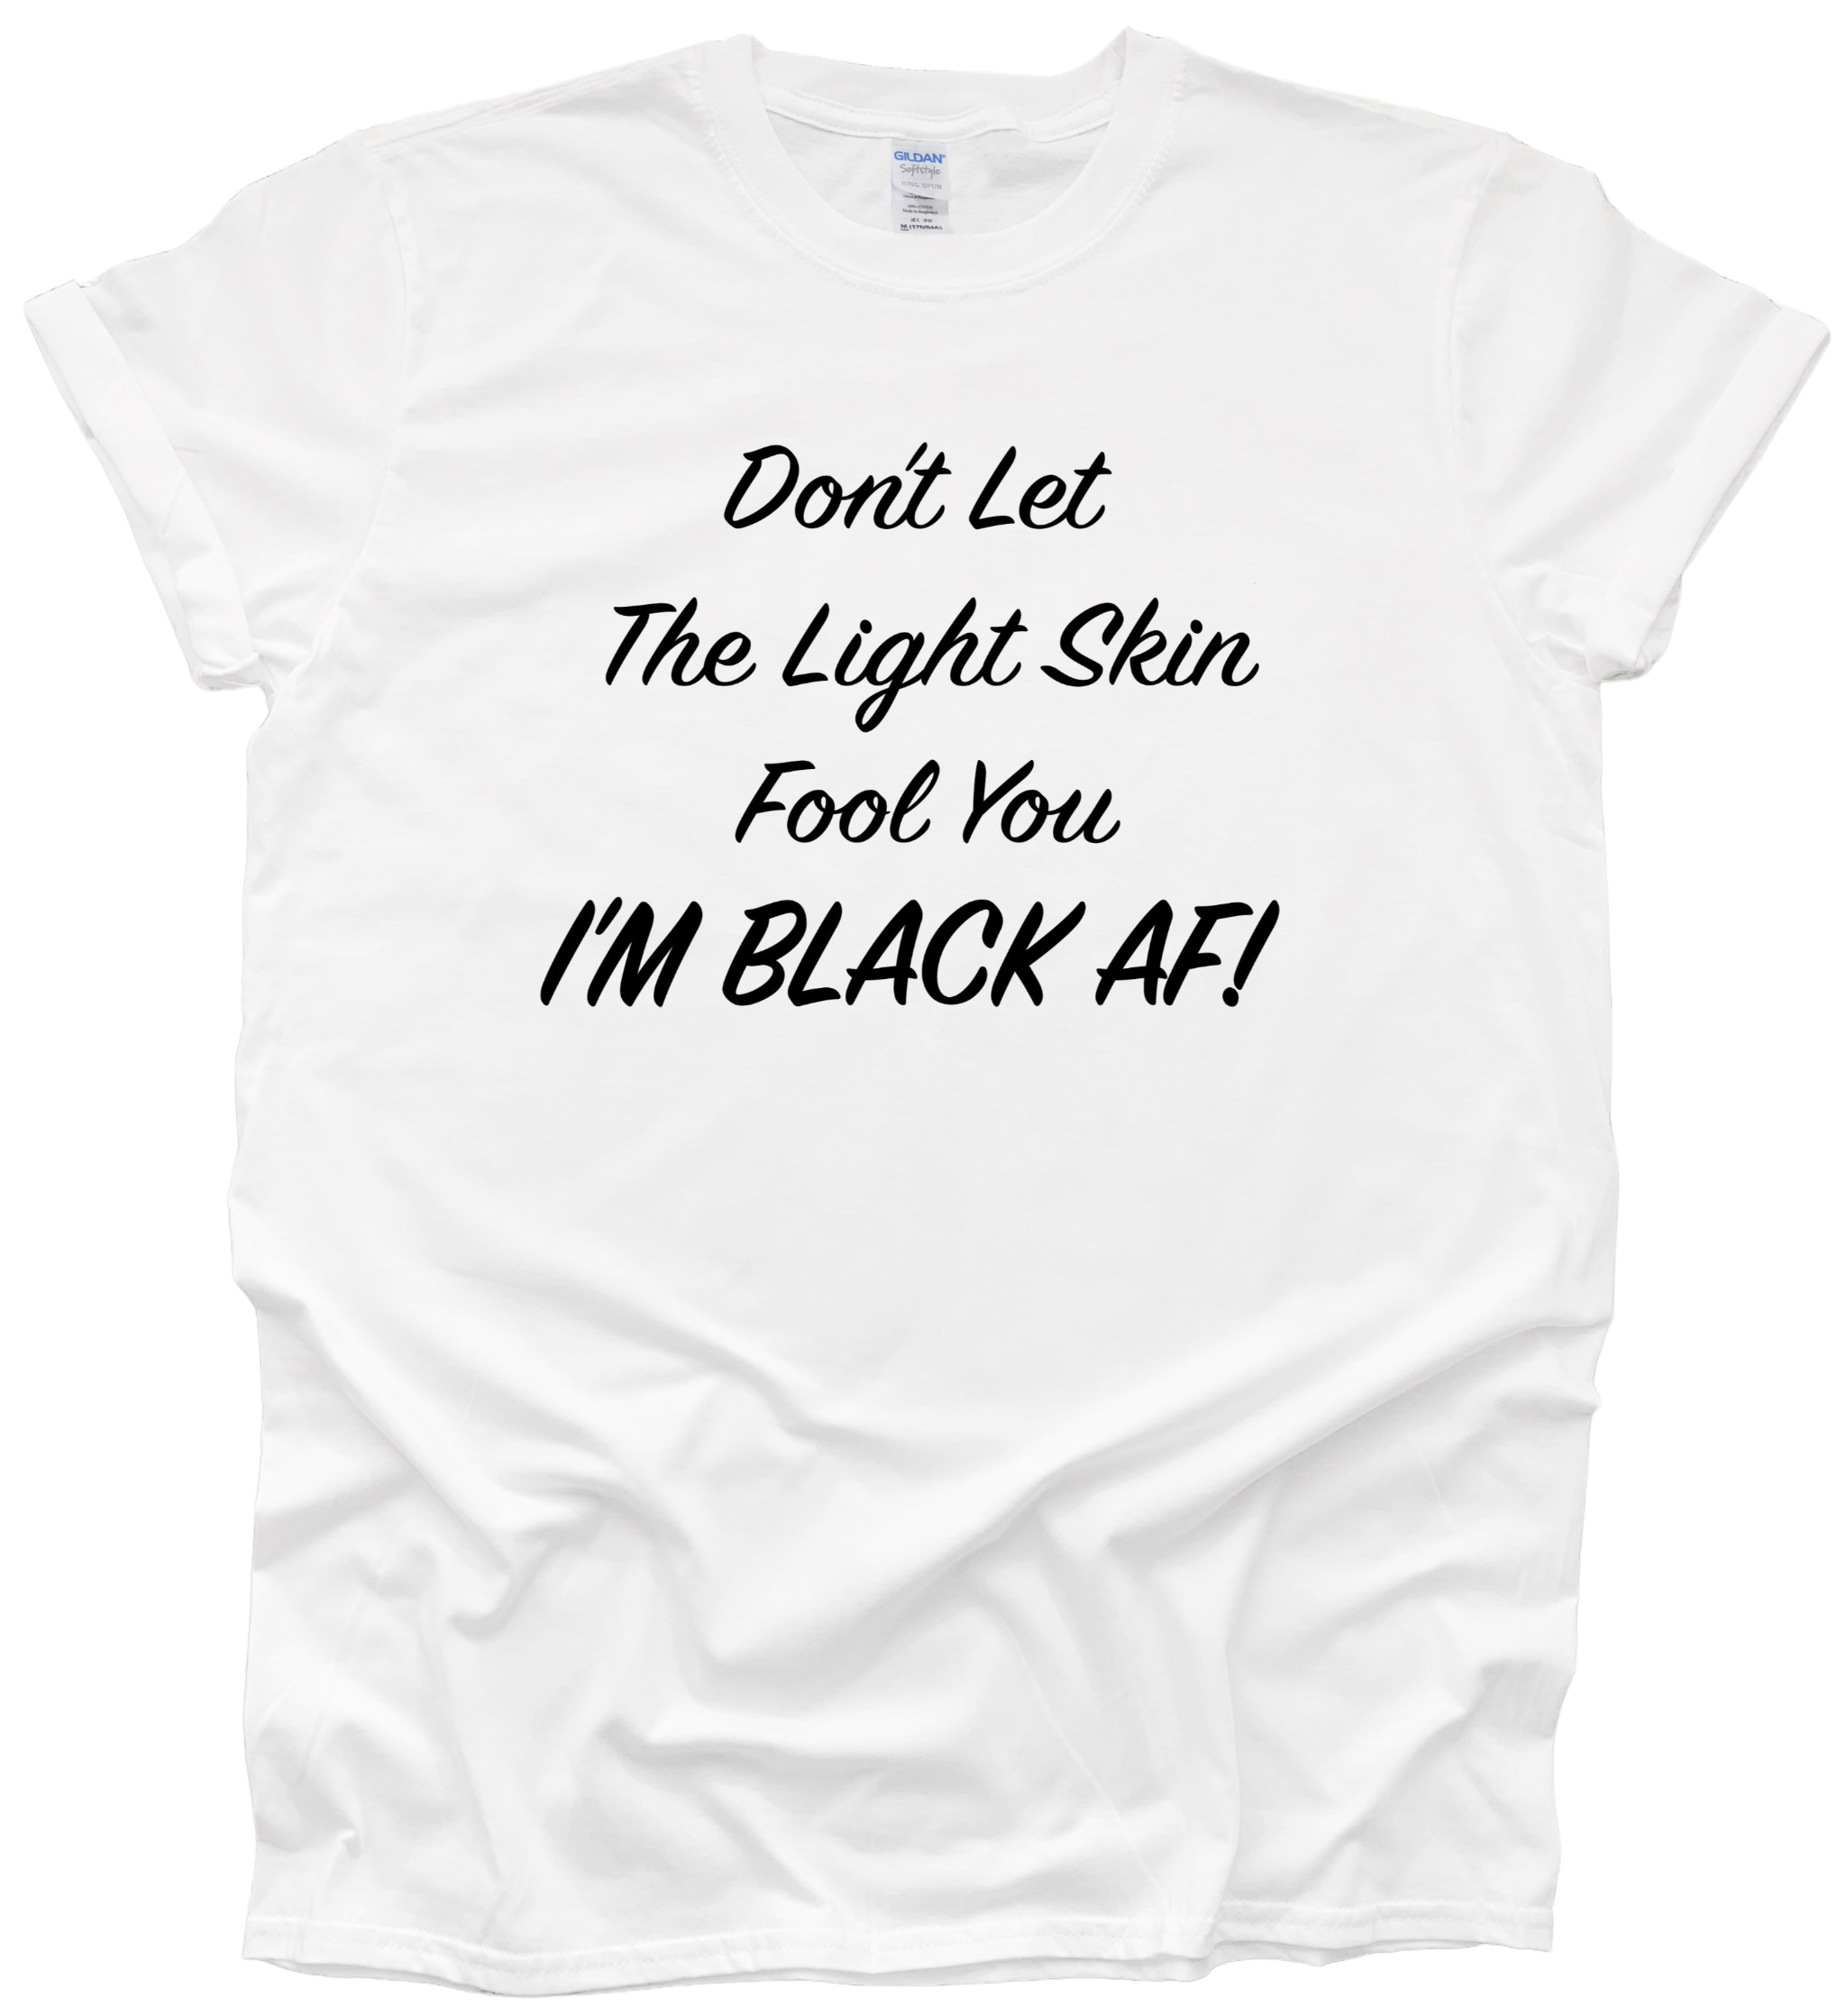 I'm Black AF